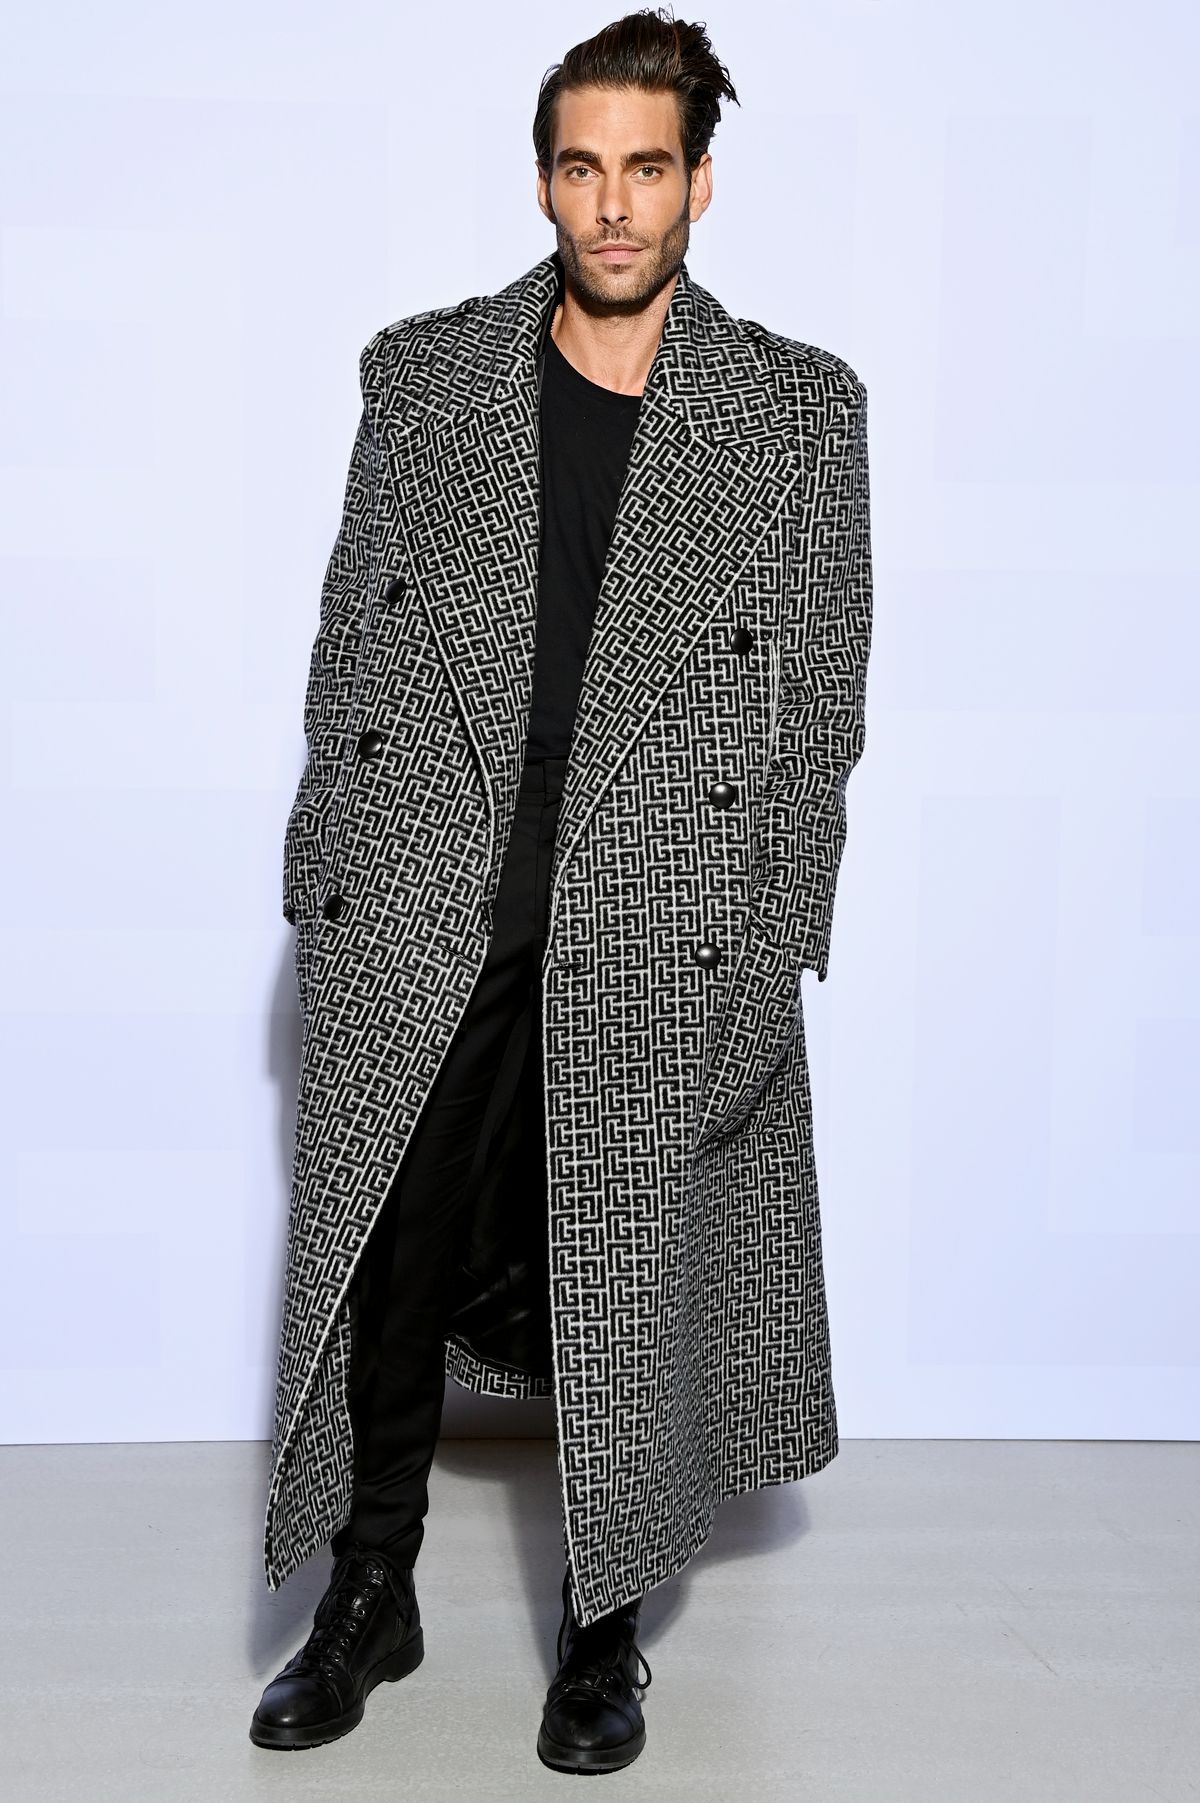 Джон Кортахарена на шоу Balmain Womenswear Весна/лето 2022 в рамках Недели моды в Париже, фото 1